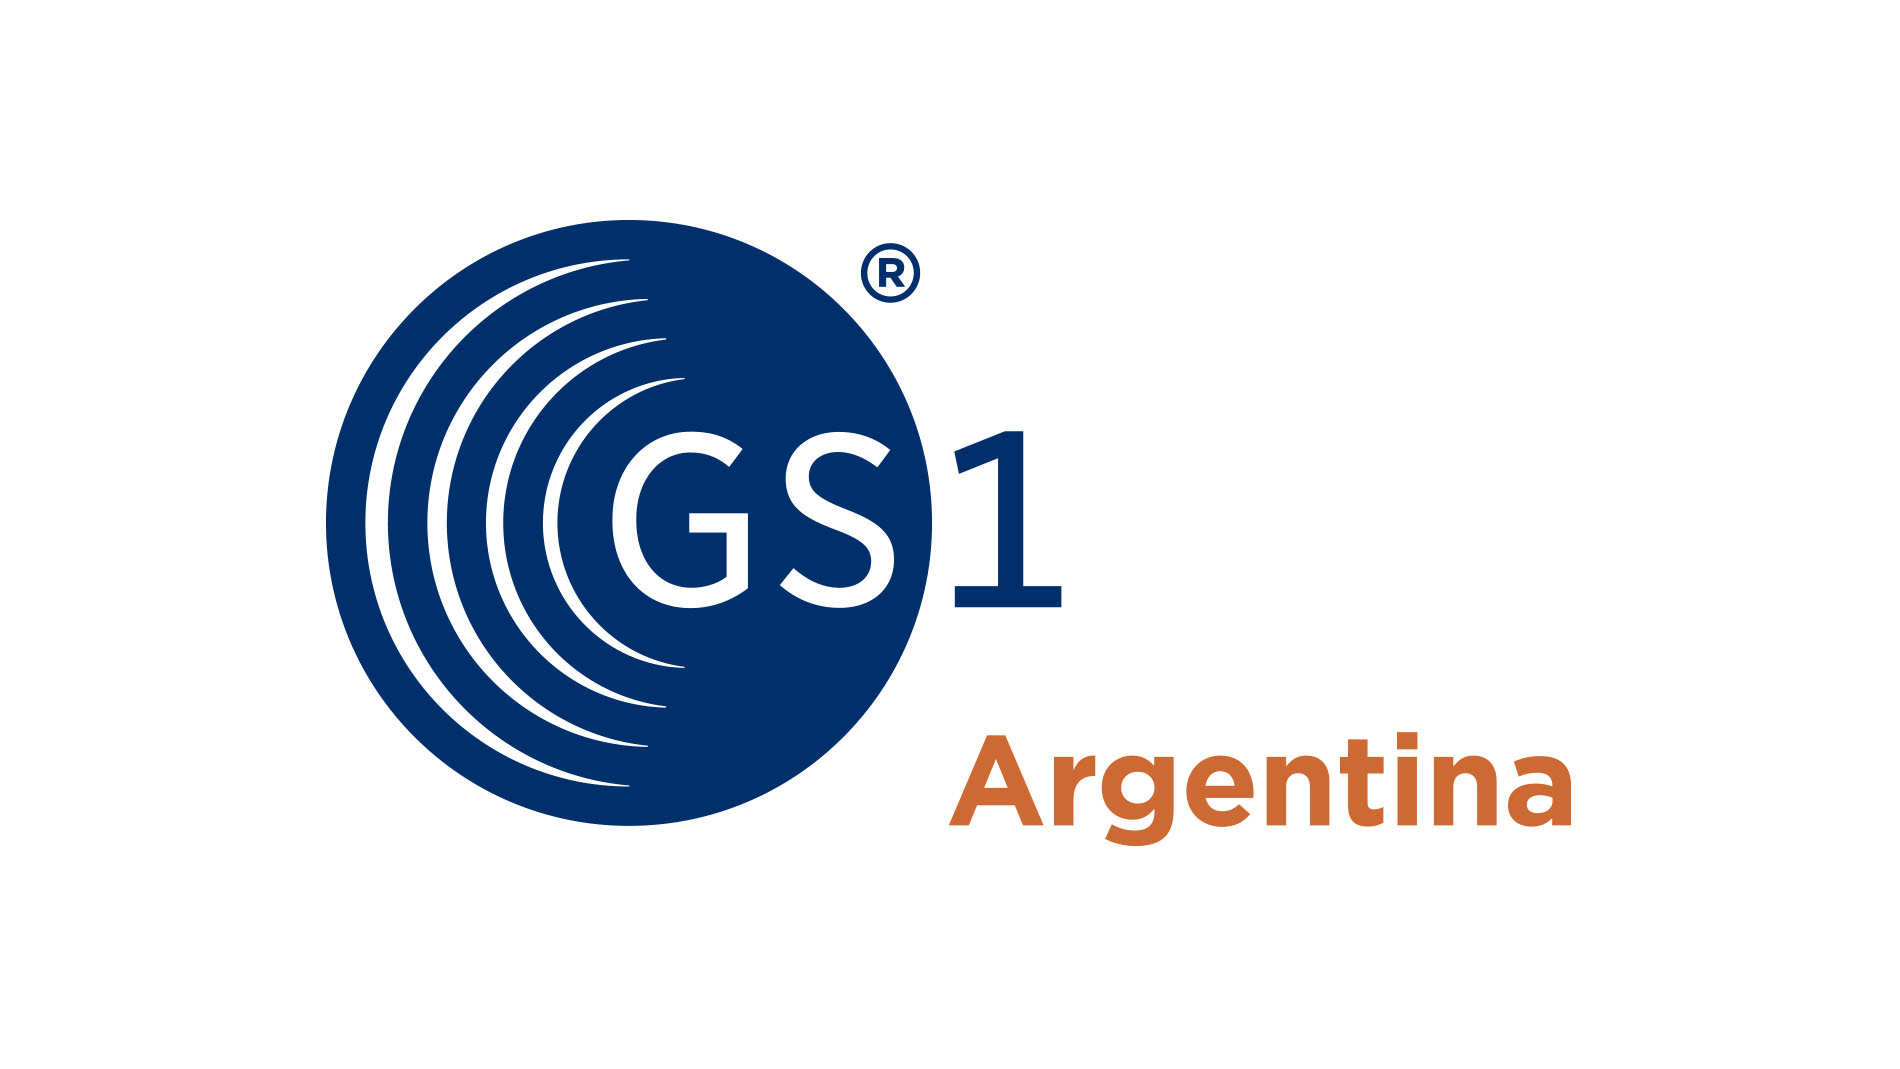 GS1 Argentina